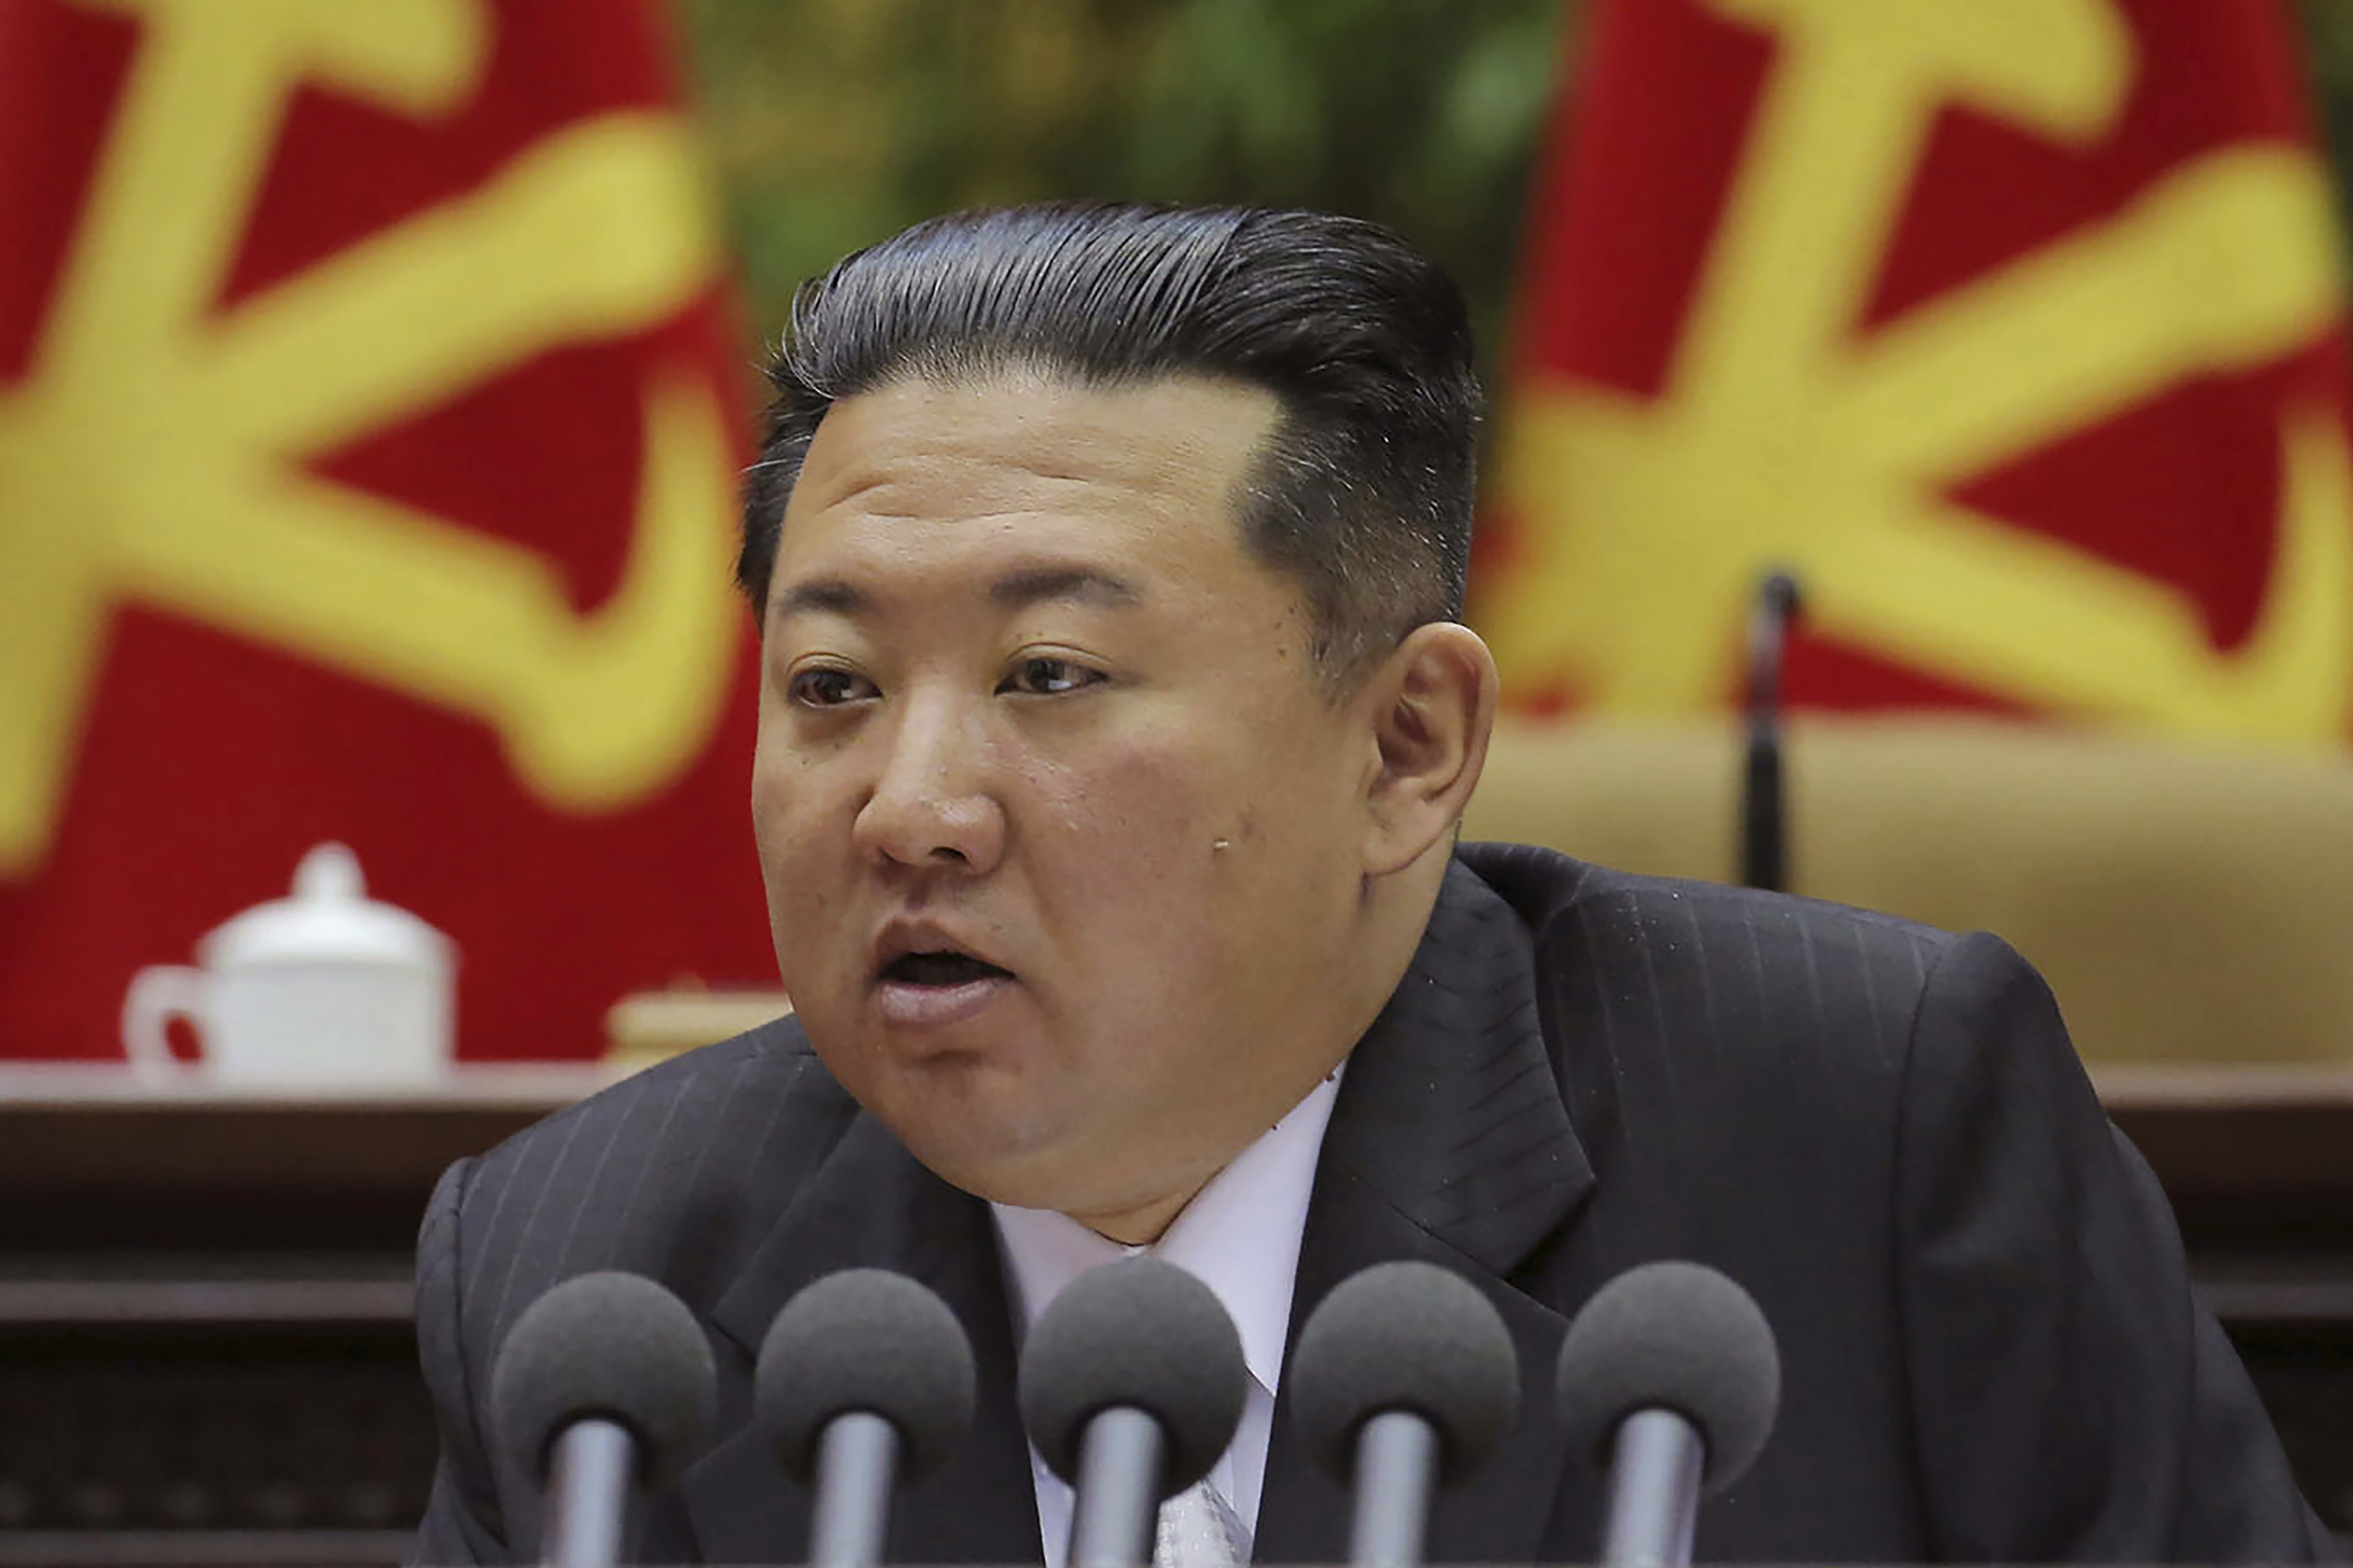 Corea del Norte realiza el lanzamiento fallido de un misil, según el Sur